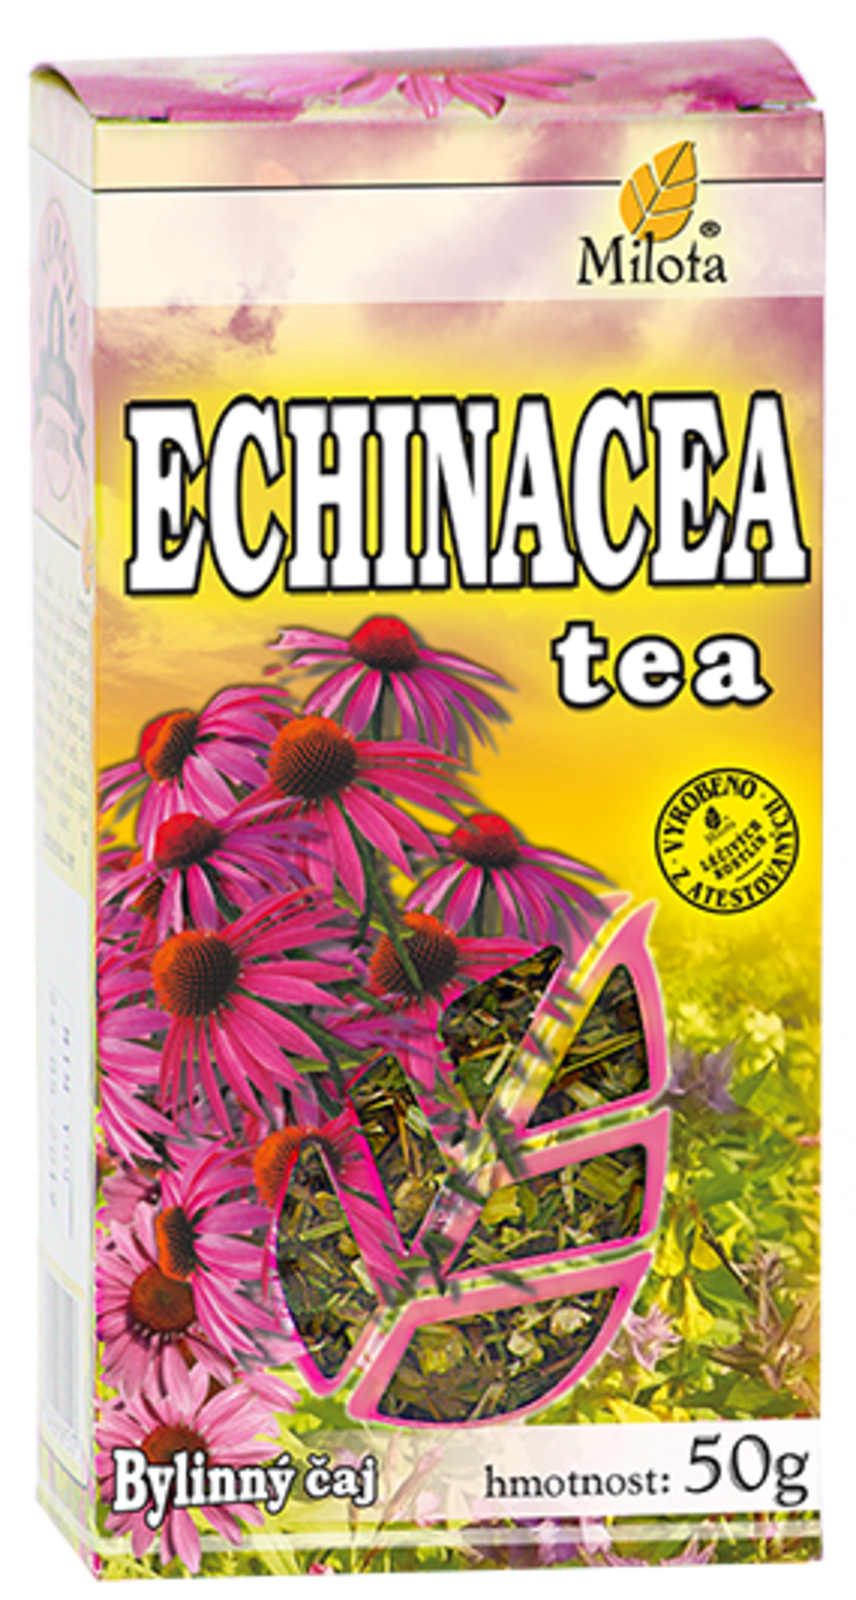 Echinacea tea 50g Bylinný Čaj